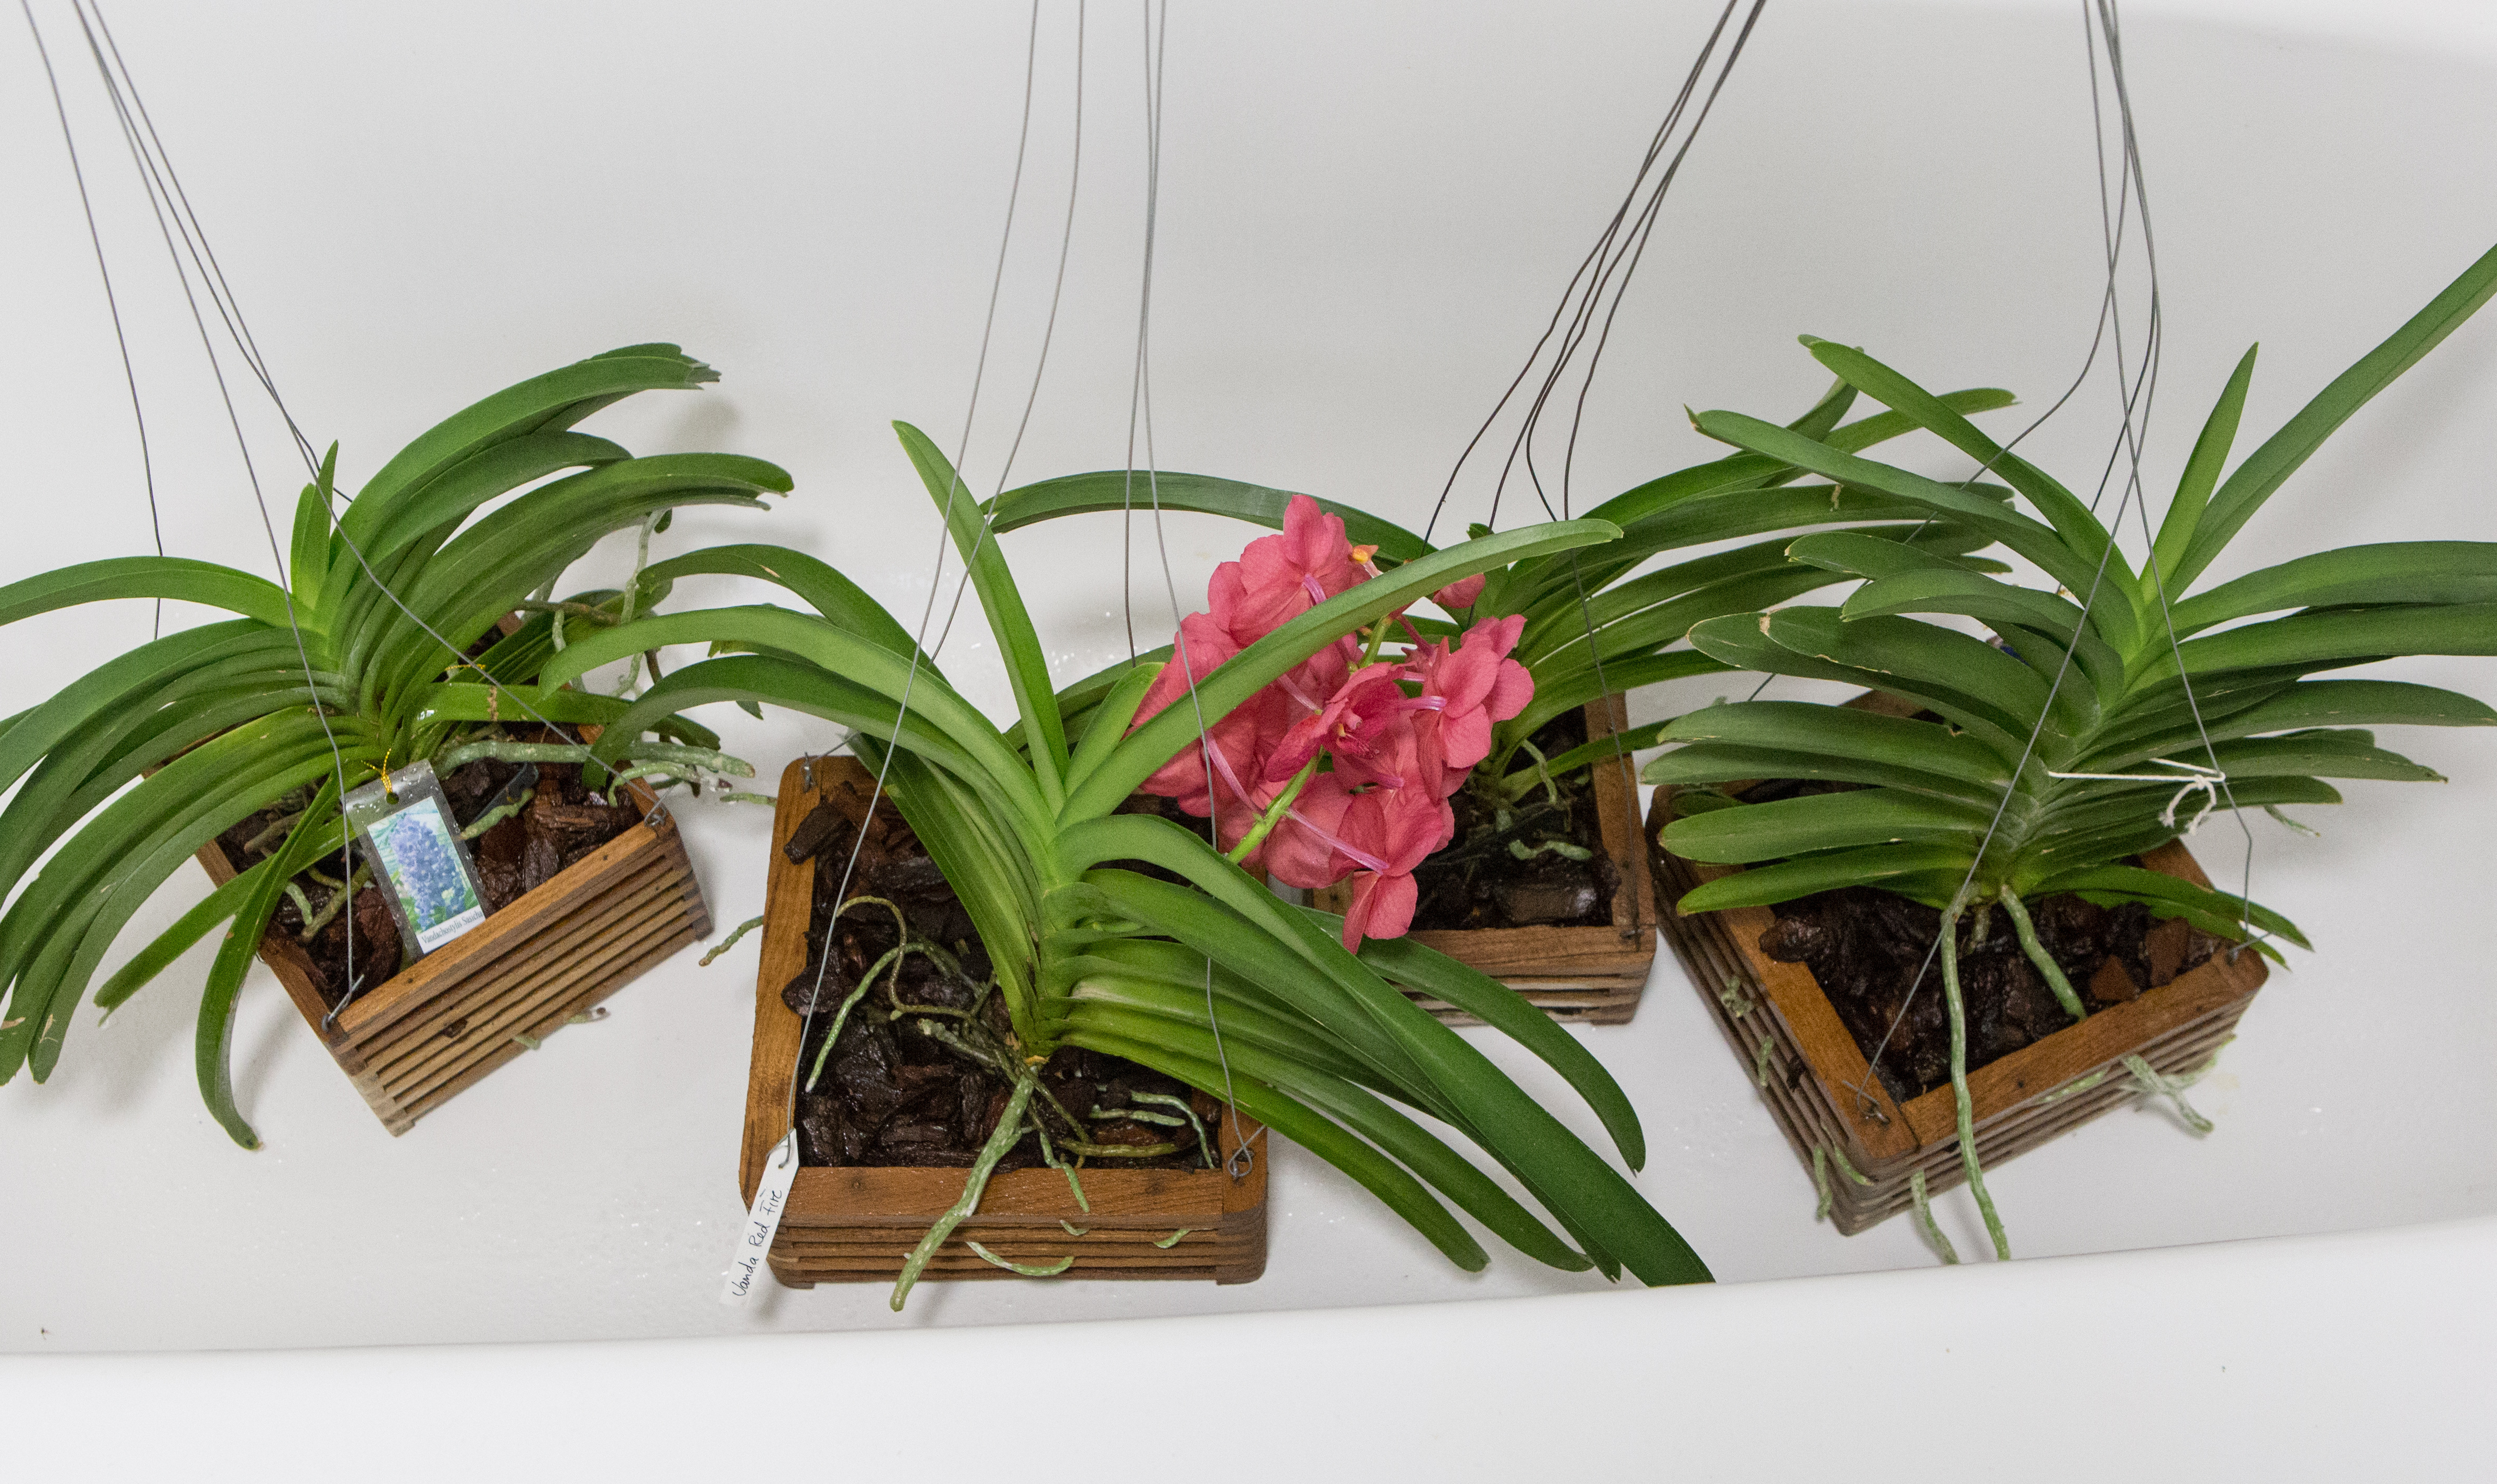 Vanda-Orchideen in der Badewanne tauchen